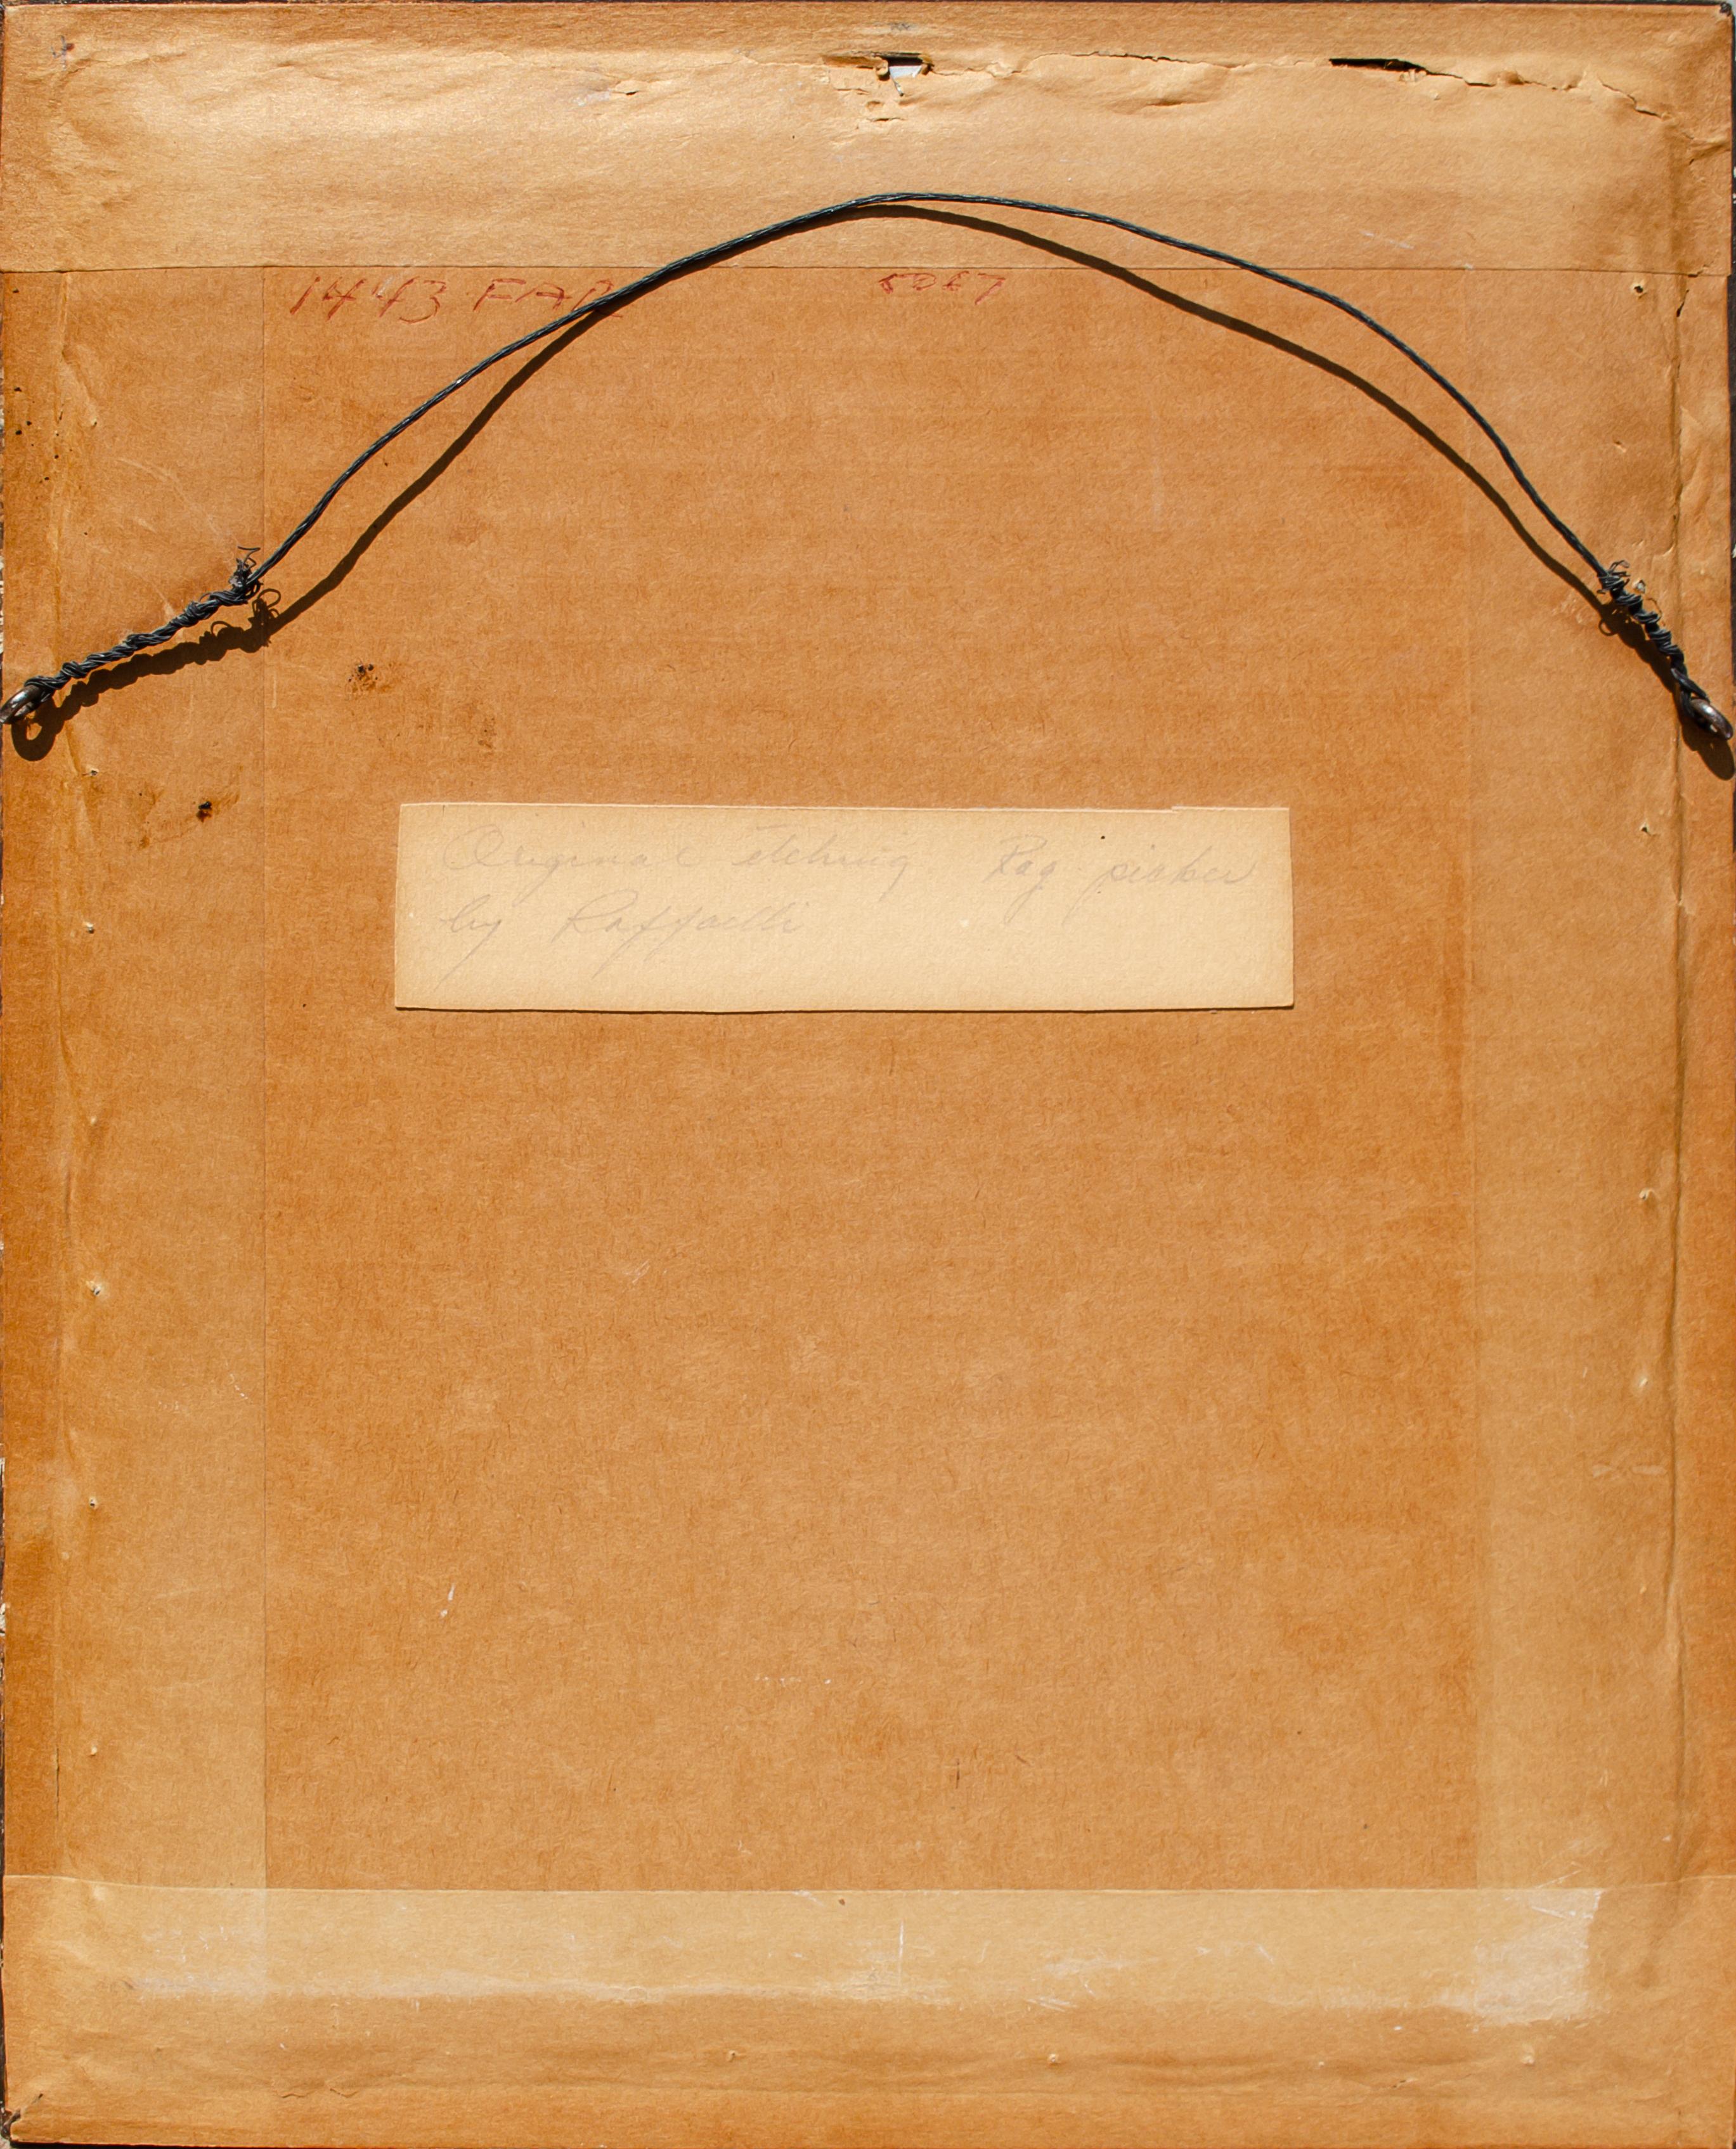 Jean-François Raffaëlli (français, 1850-1924)
Le Marchand de Habits, 1895
Gravure et pointe sèche 
Vue : 6 x 4 in.
Encadré : 12 x 9 3/4 x 3/4 in.
Initialisé en bas à gauche dans la plaque : R

Cette gravure est enregistrée sous la référence de